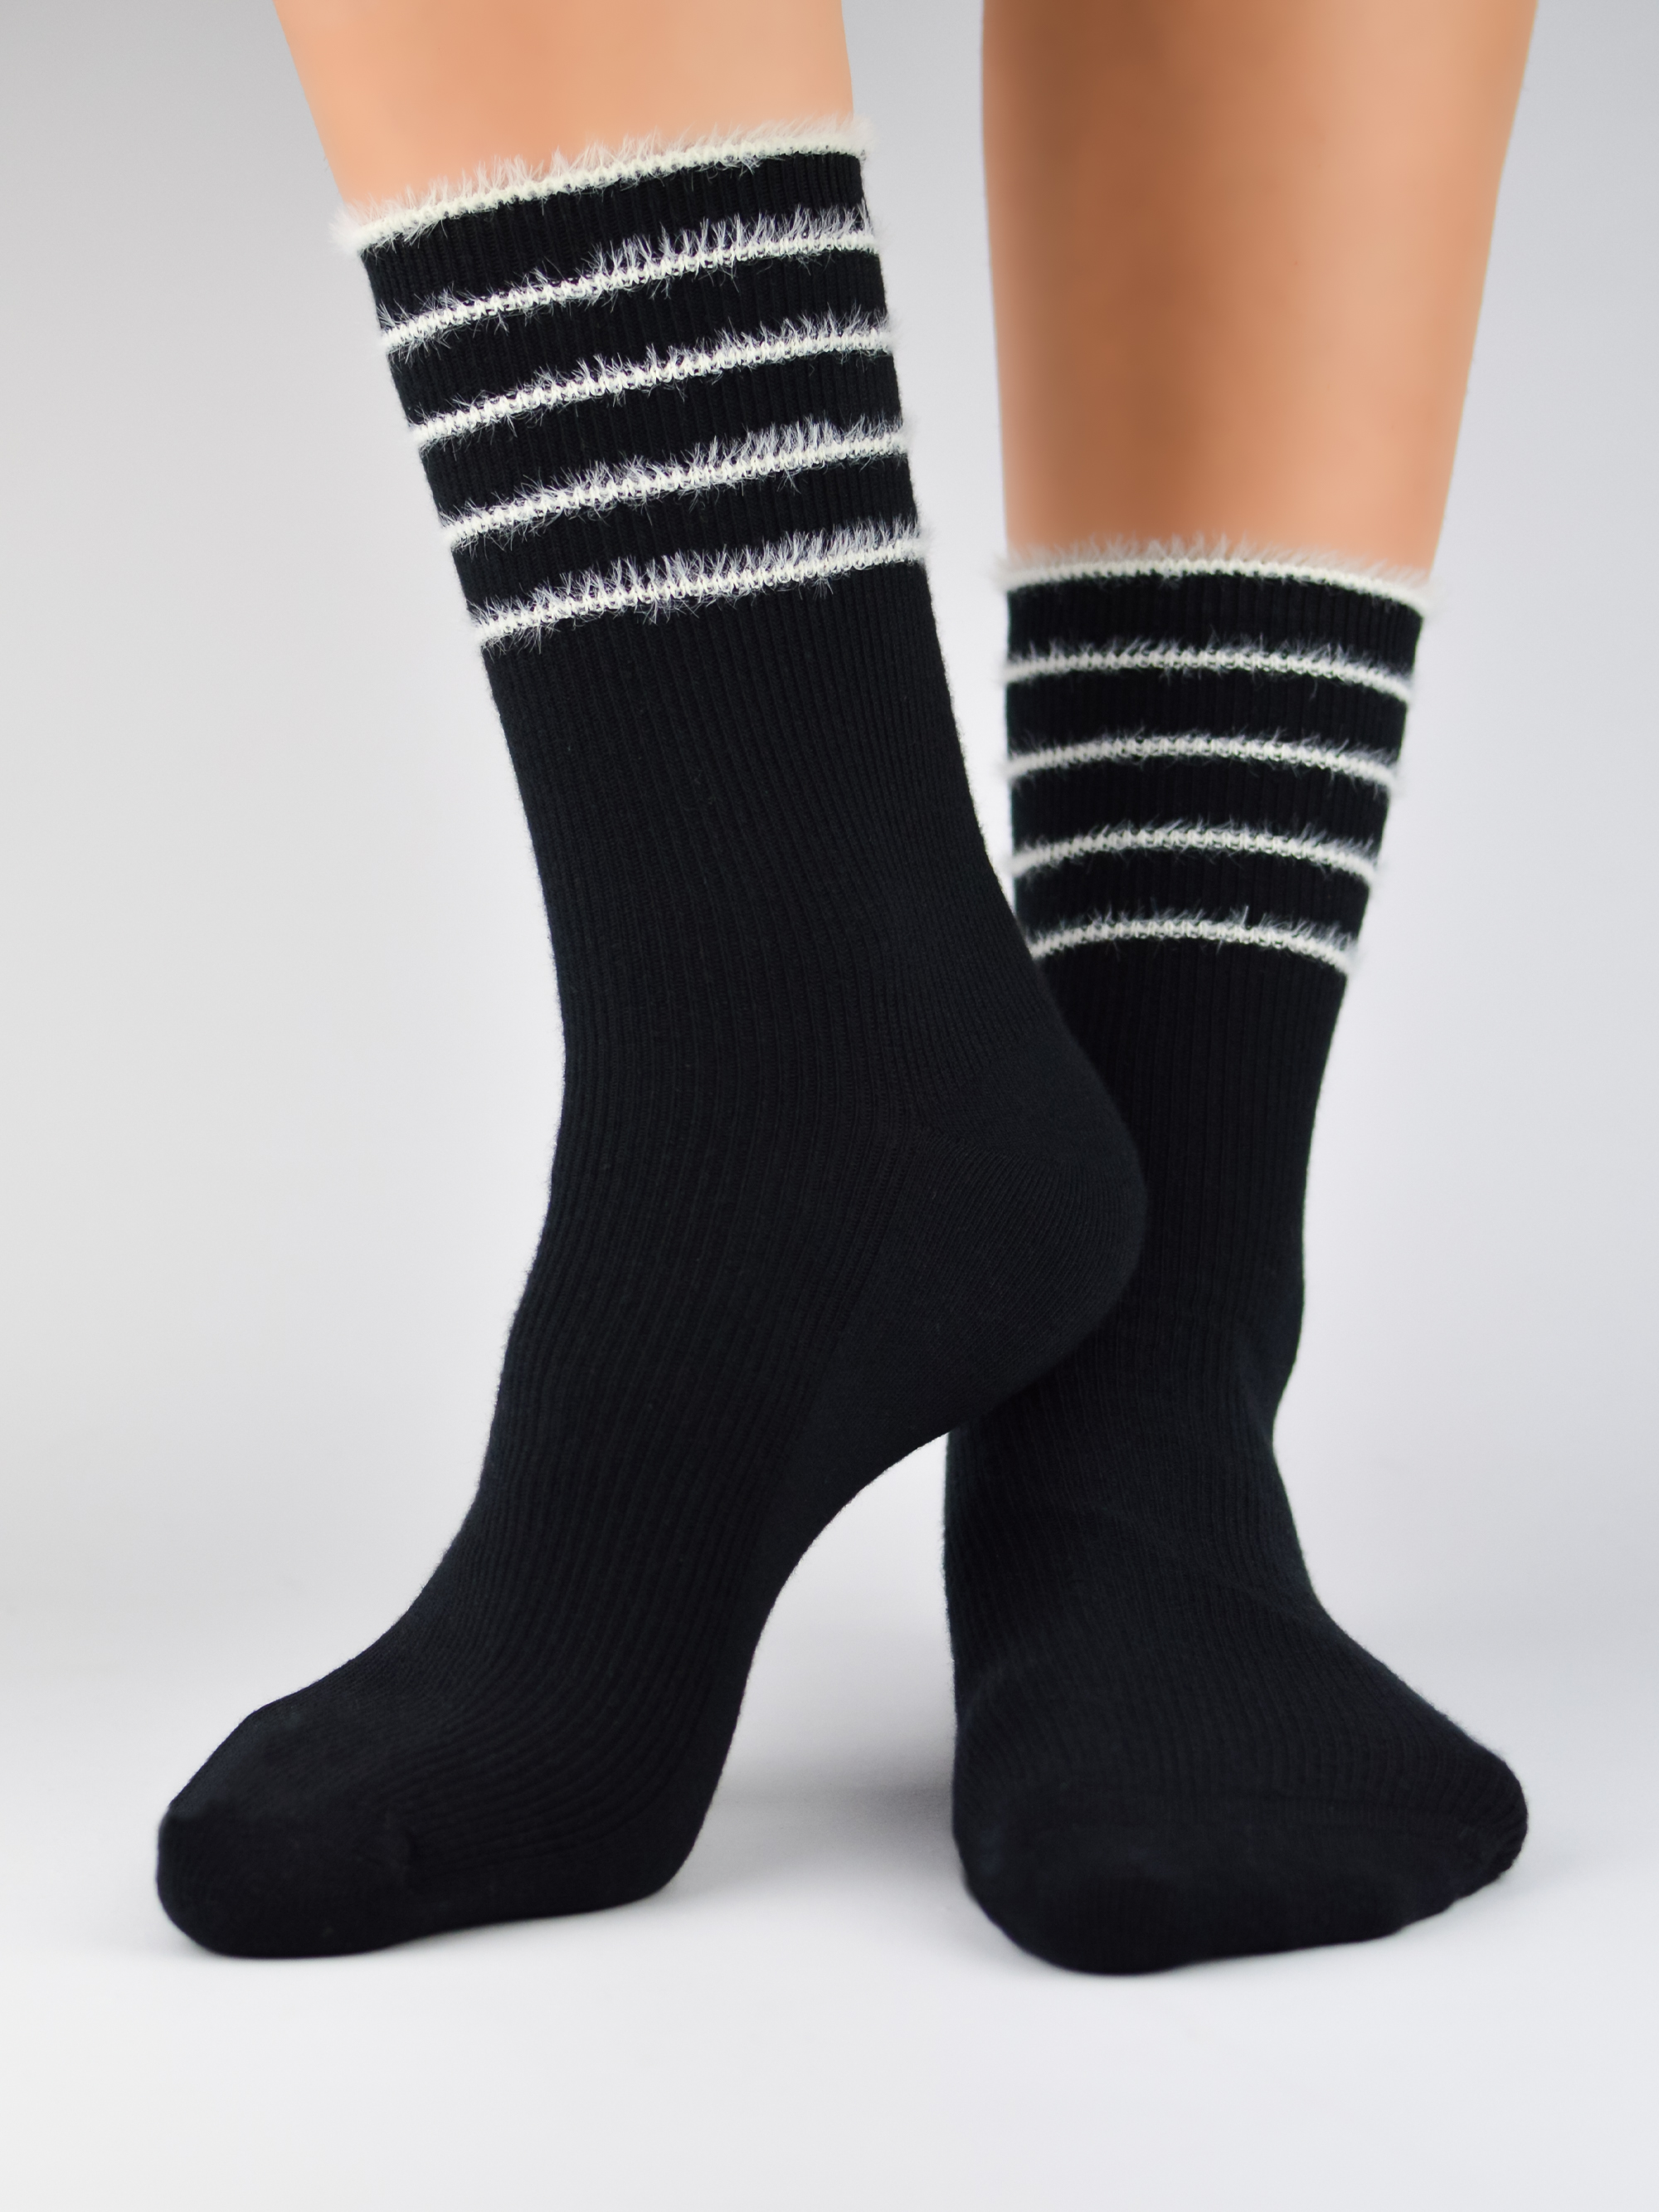 NOVITI Woman's Socks SB053-W-02